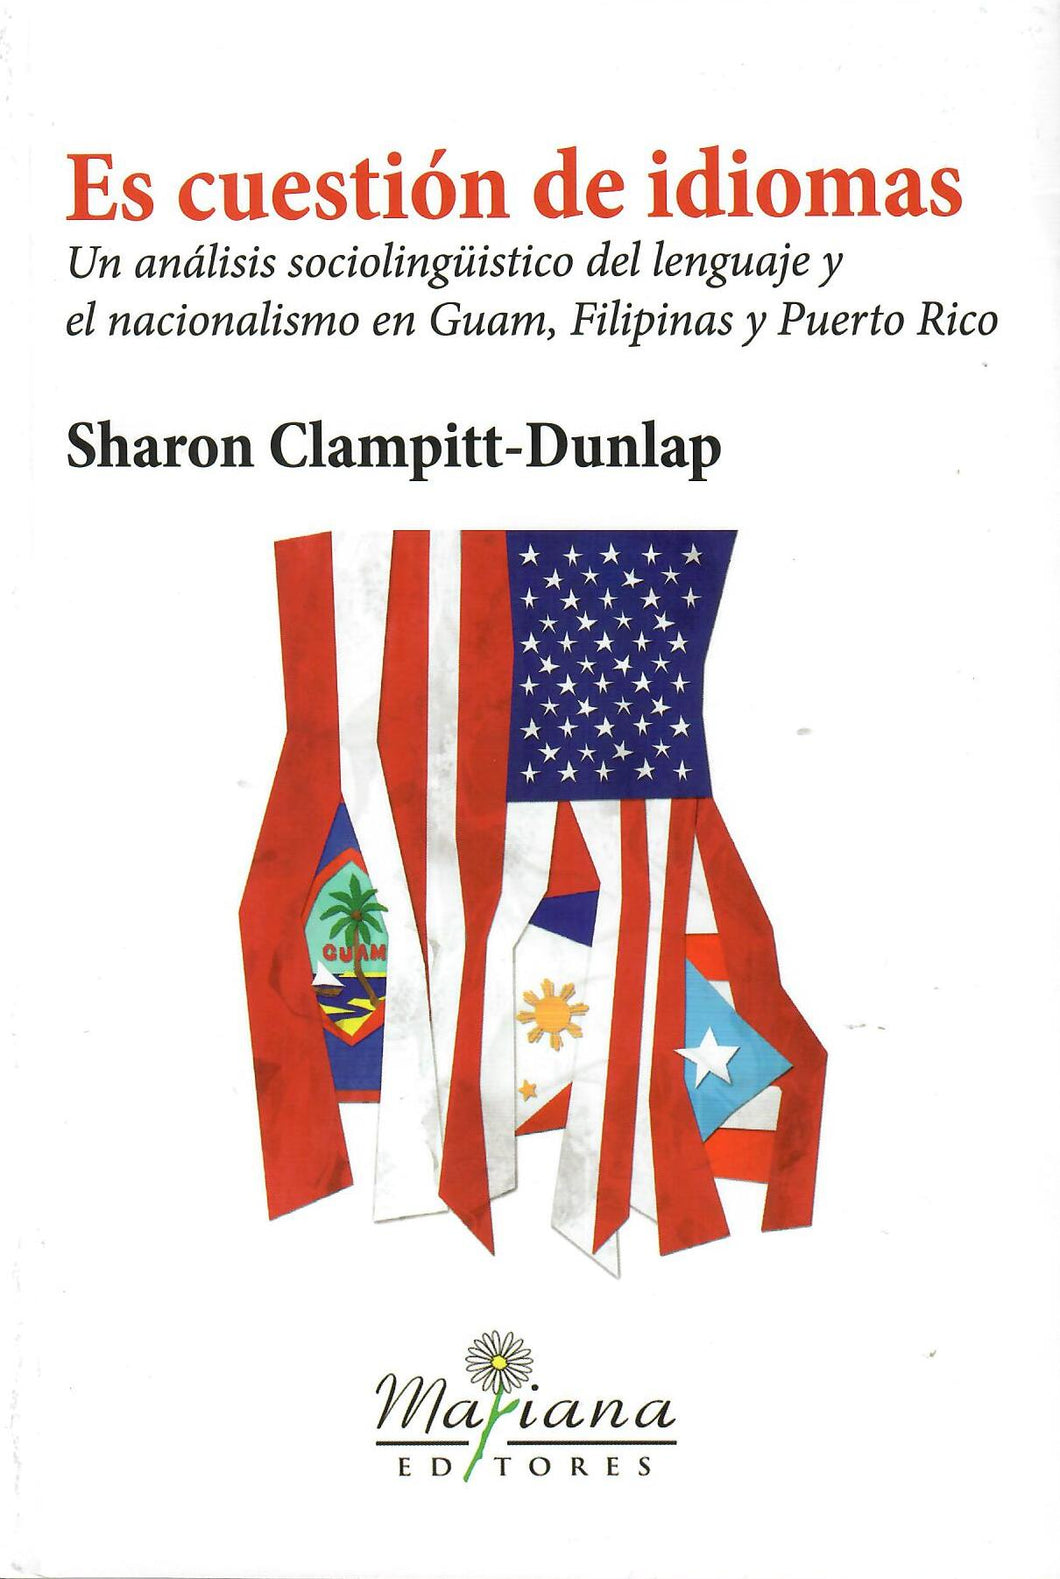 ES CUESTIÓN DE IDIOMAS: UN ANÁLISIS SOCIOLINGÜISTICO DEL LENGUAJE Y EL NACIONALISMO EN GUAM, FILIPINAS Y PUERTO RICO - Sharon Clampitt-Dunlap